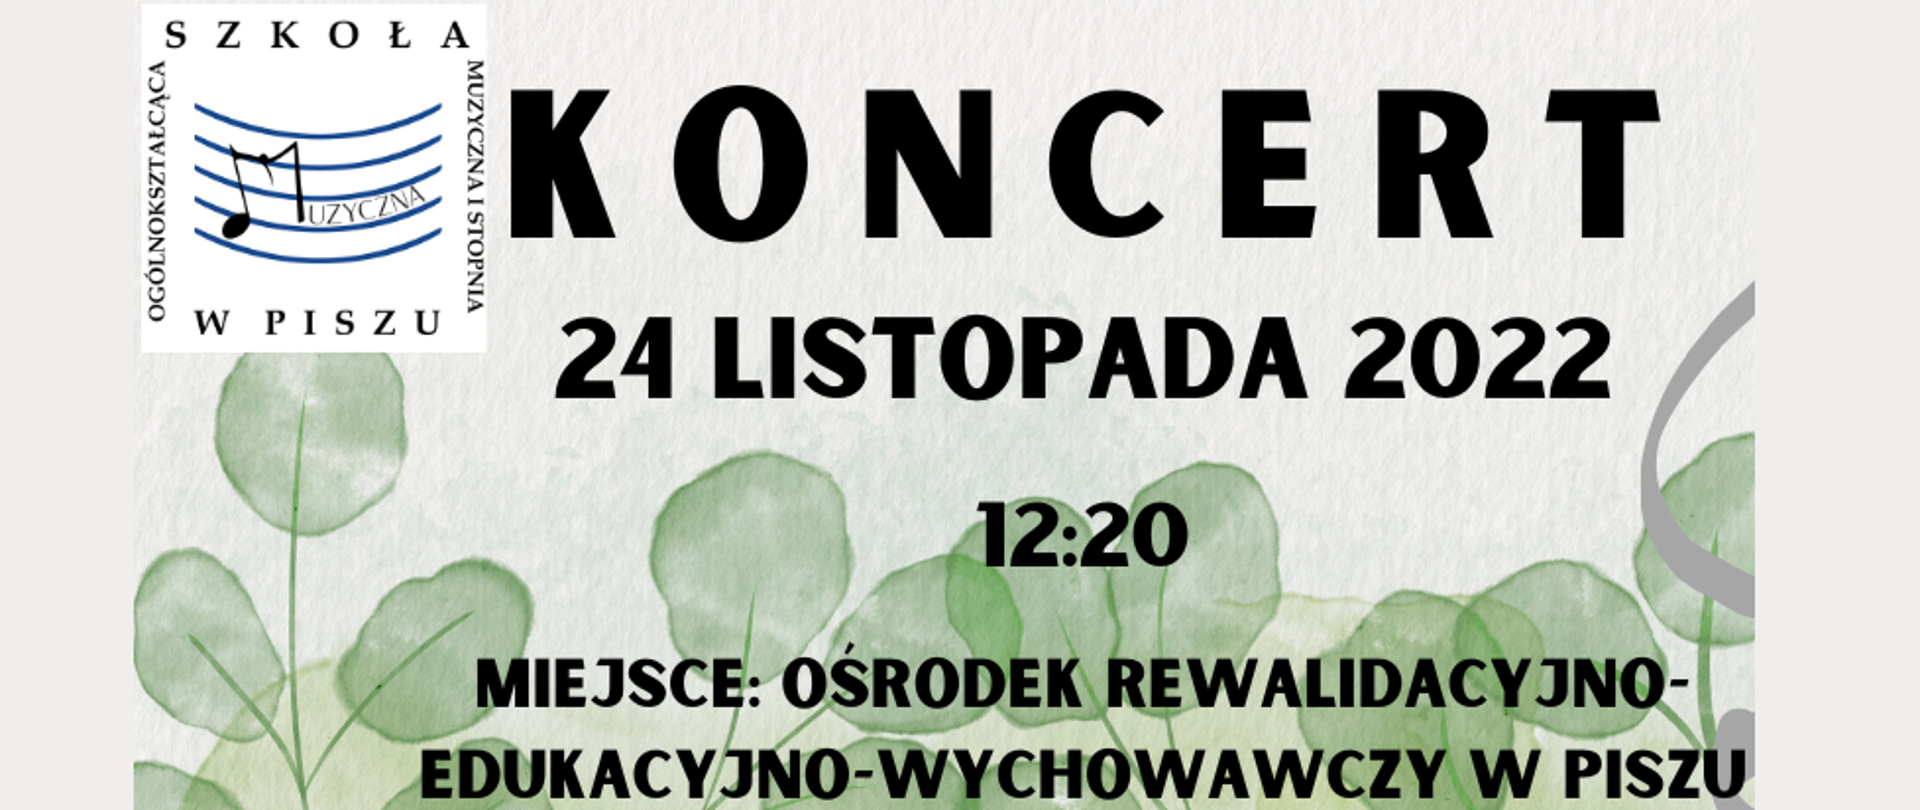 Plakat na szarym tle, motyw roślinny u dołu. Koncert uczniów OSM I st. w Piszu odbędzie się 24 listopada 2022r. w Ośrodku Rewalidacyjno-Edykacyjno-Wychowawczym w Piszu.